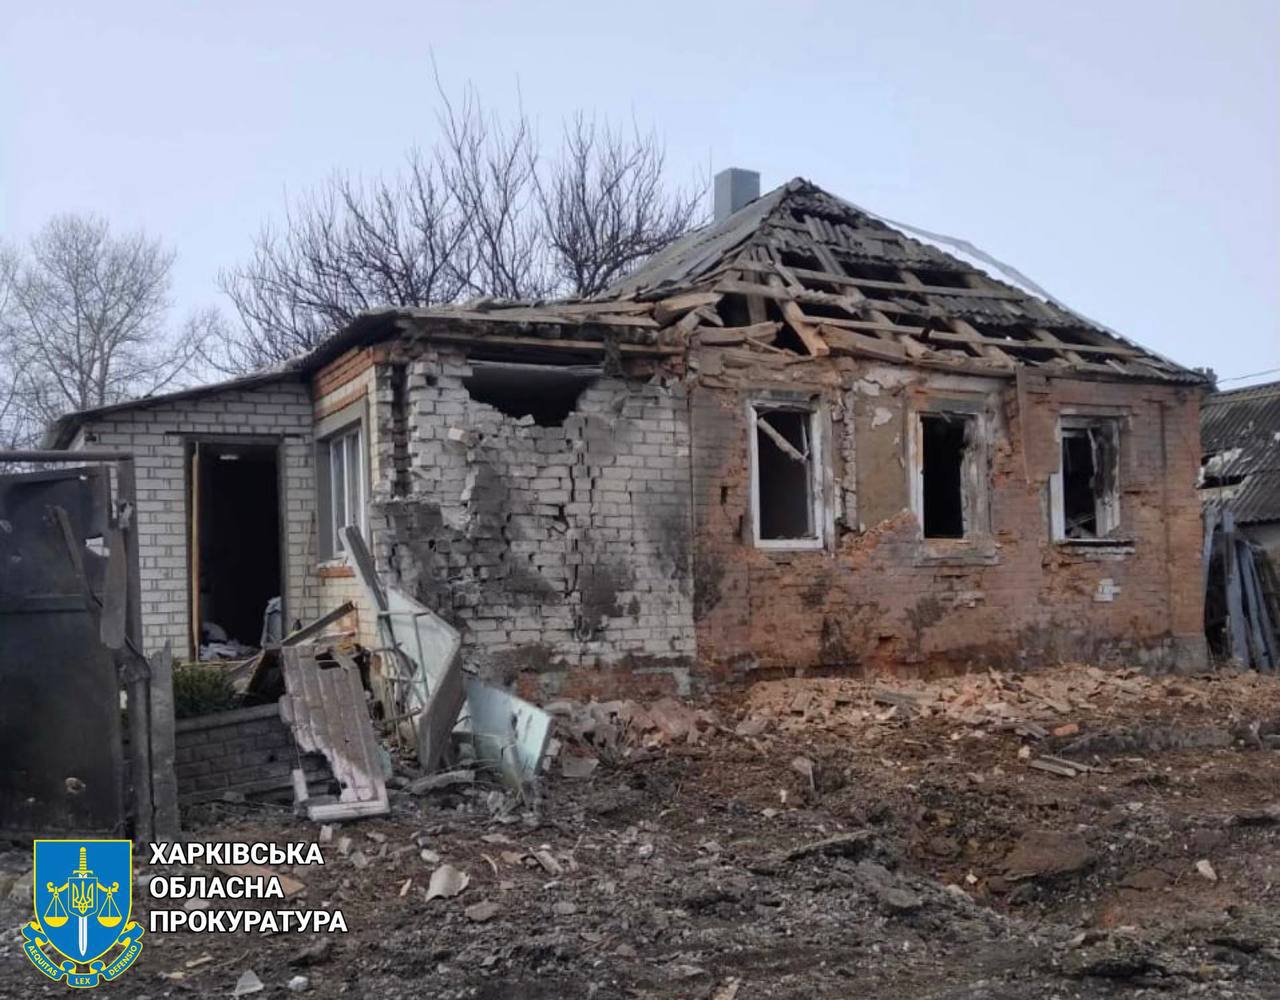 Сын из оккупированного Крыма бомбит Украину, где живет его мать — СБУ (видео)